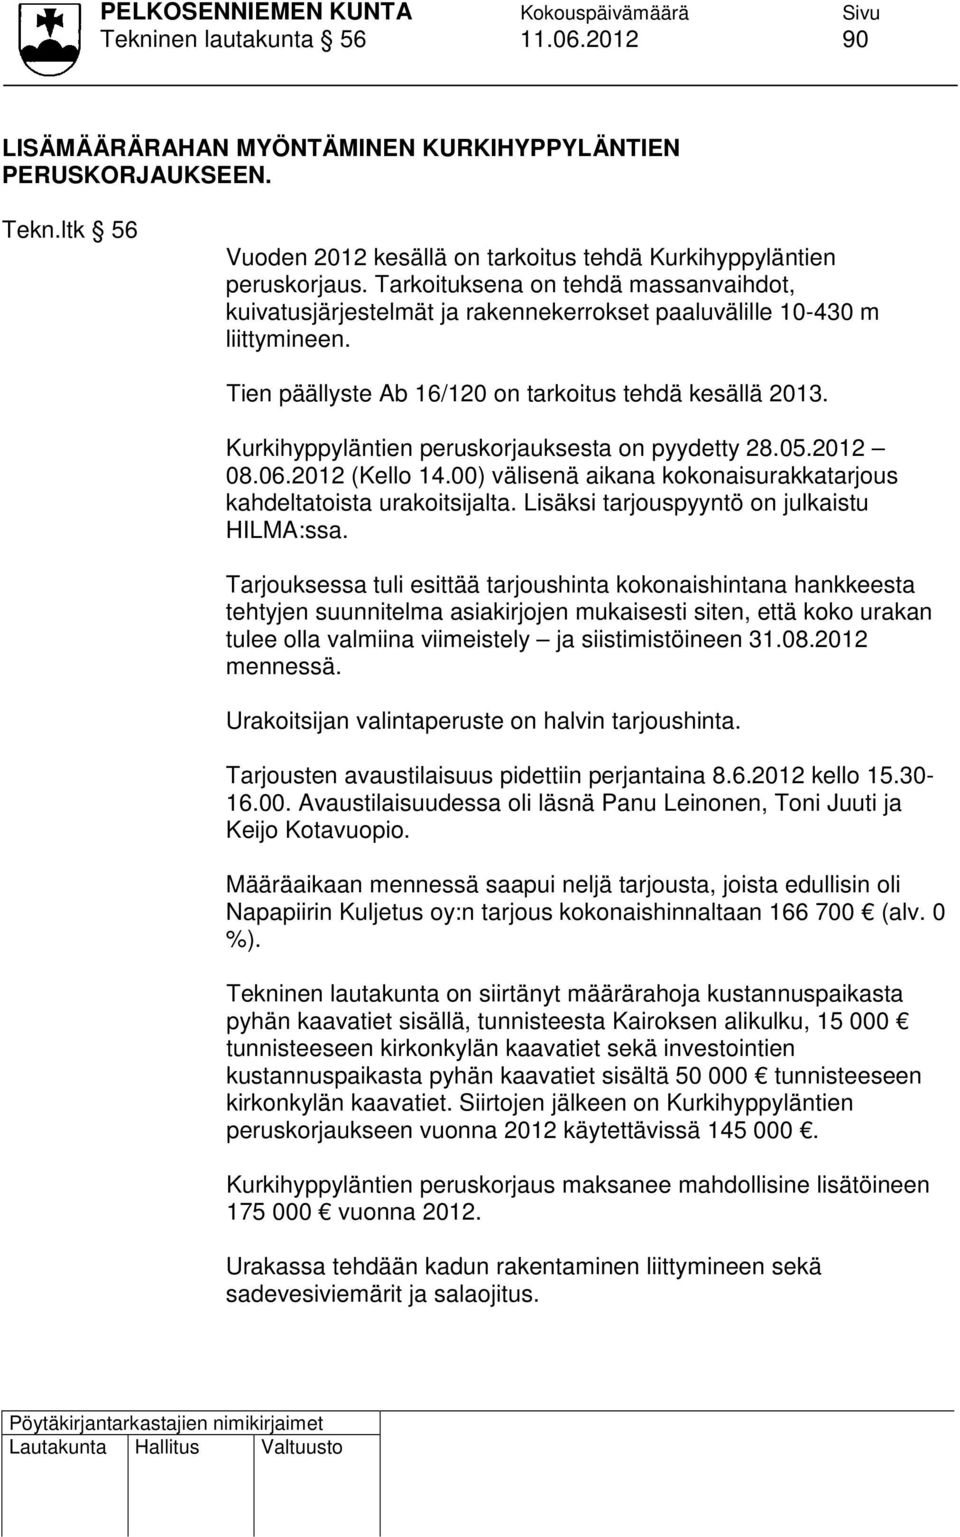 Kurkihyppyläntien peruskorjauksesta on pyydetty 28.05.2012 08.06.2012 (Kello 14.00) välisenä aikana kokonaisurakkatarjous kahdeltatoista urakoitsijalta. Lisäksi tarjouspyyntö on julkaistu HILMA:ssa.